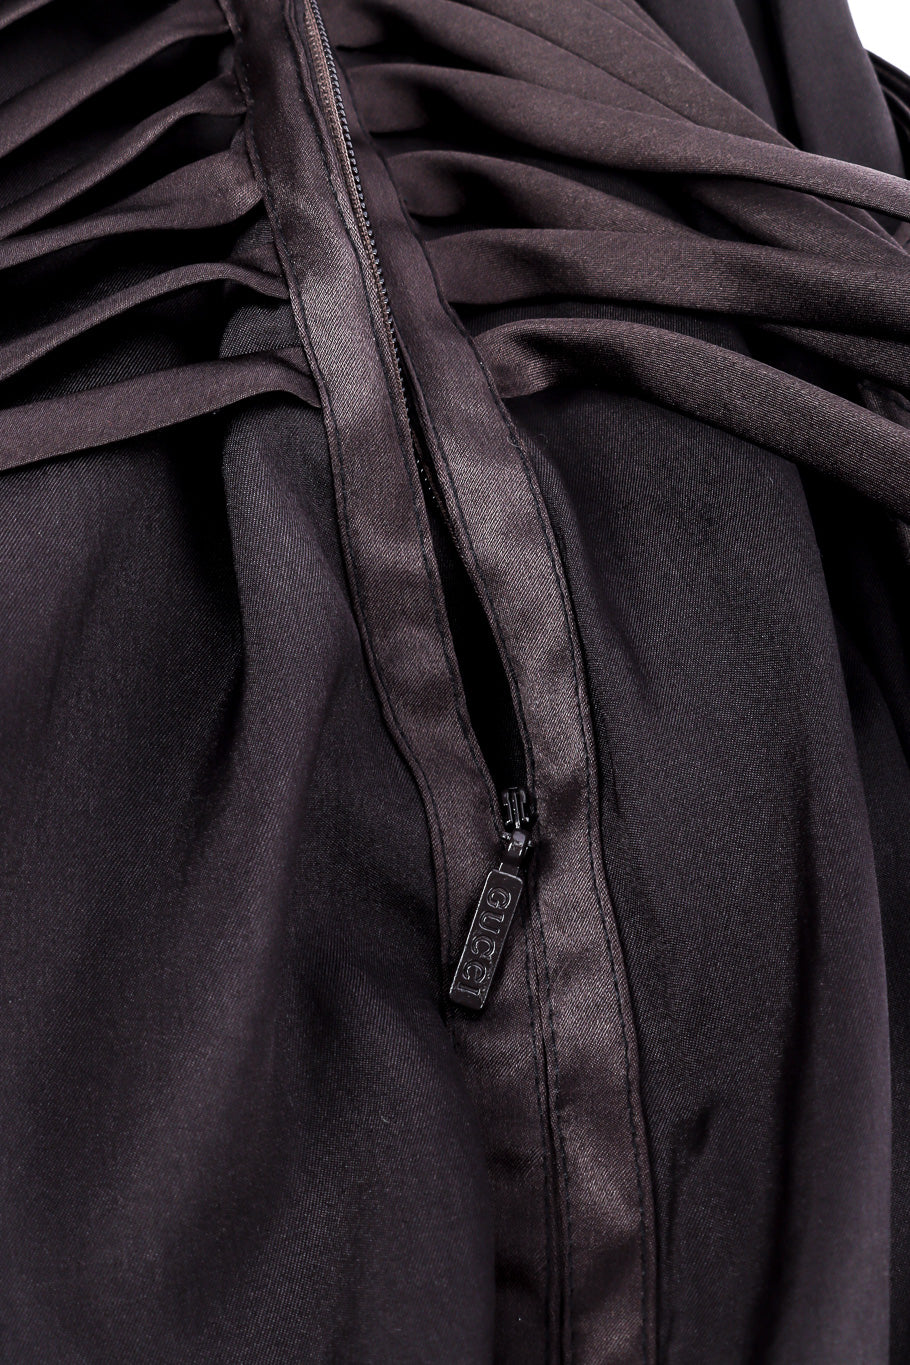 Gucci 2003 F/W Silk Corset Dress back zipper closure closeup @Recessla